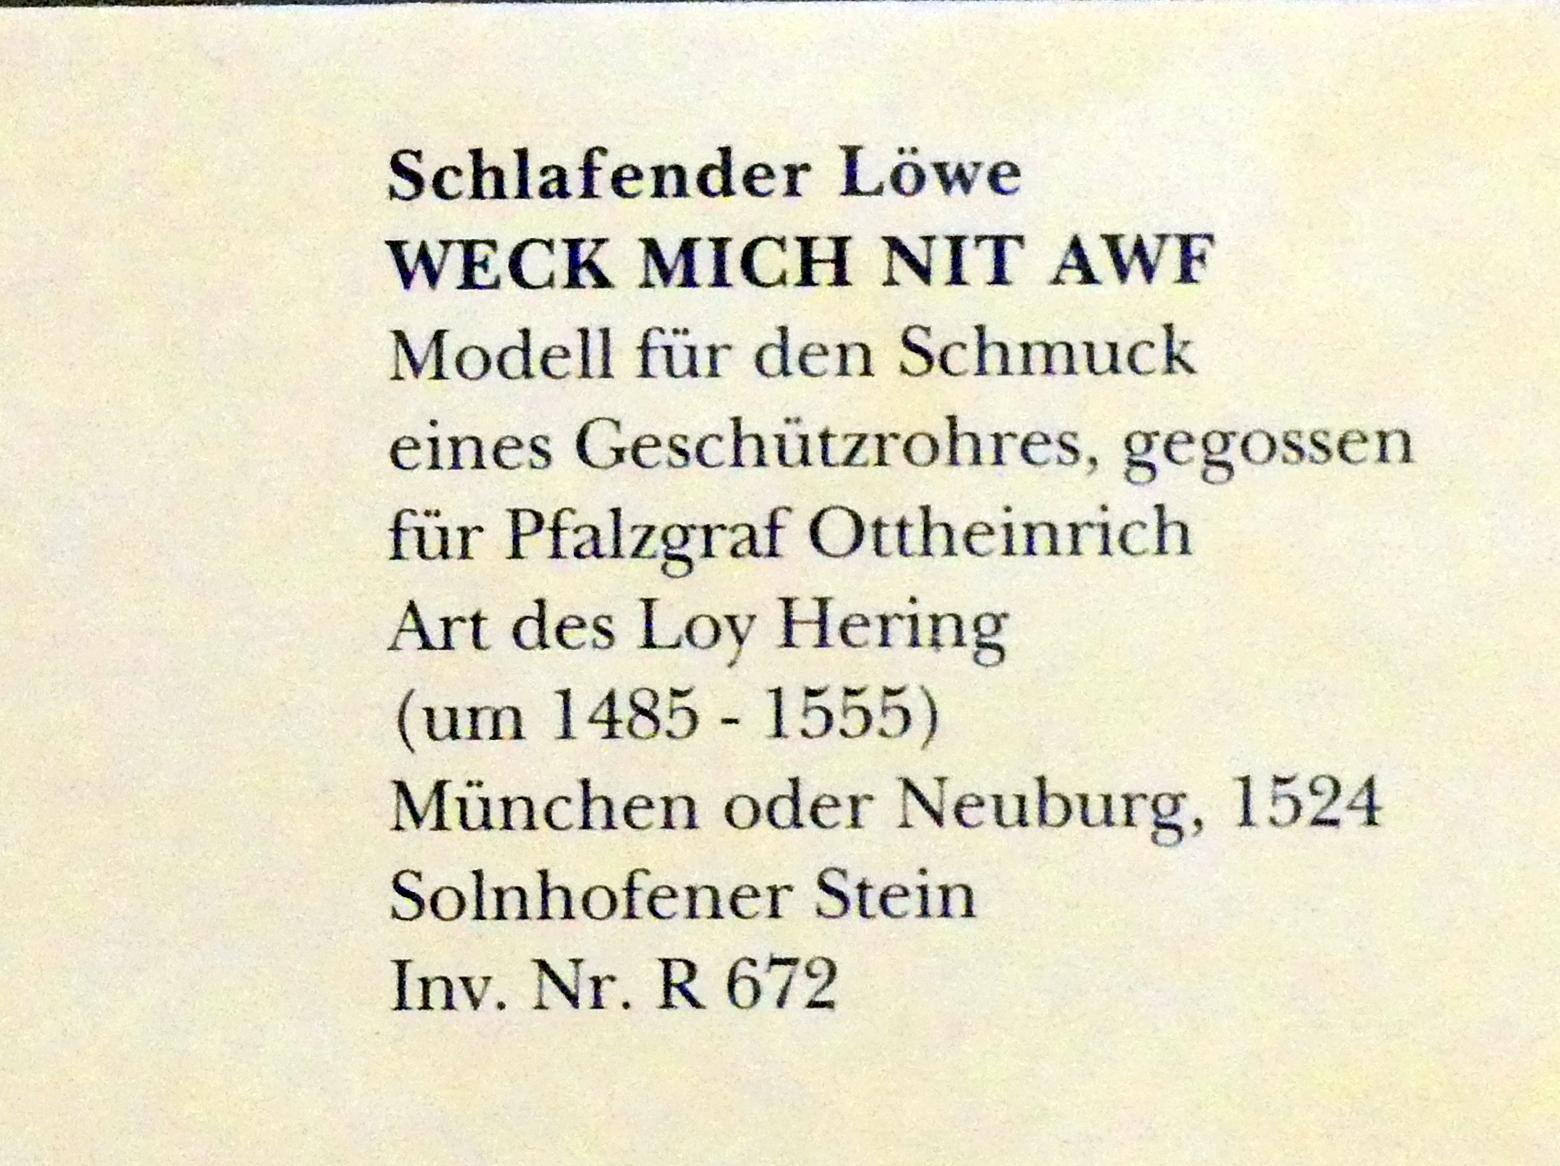 Schlafender Löwe WECK MICH NIT AWF, München, Bayerisches Nationalmuseum, Saal 21, 1524, Bild 2/2